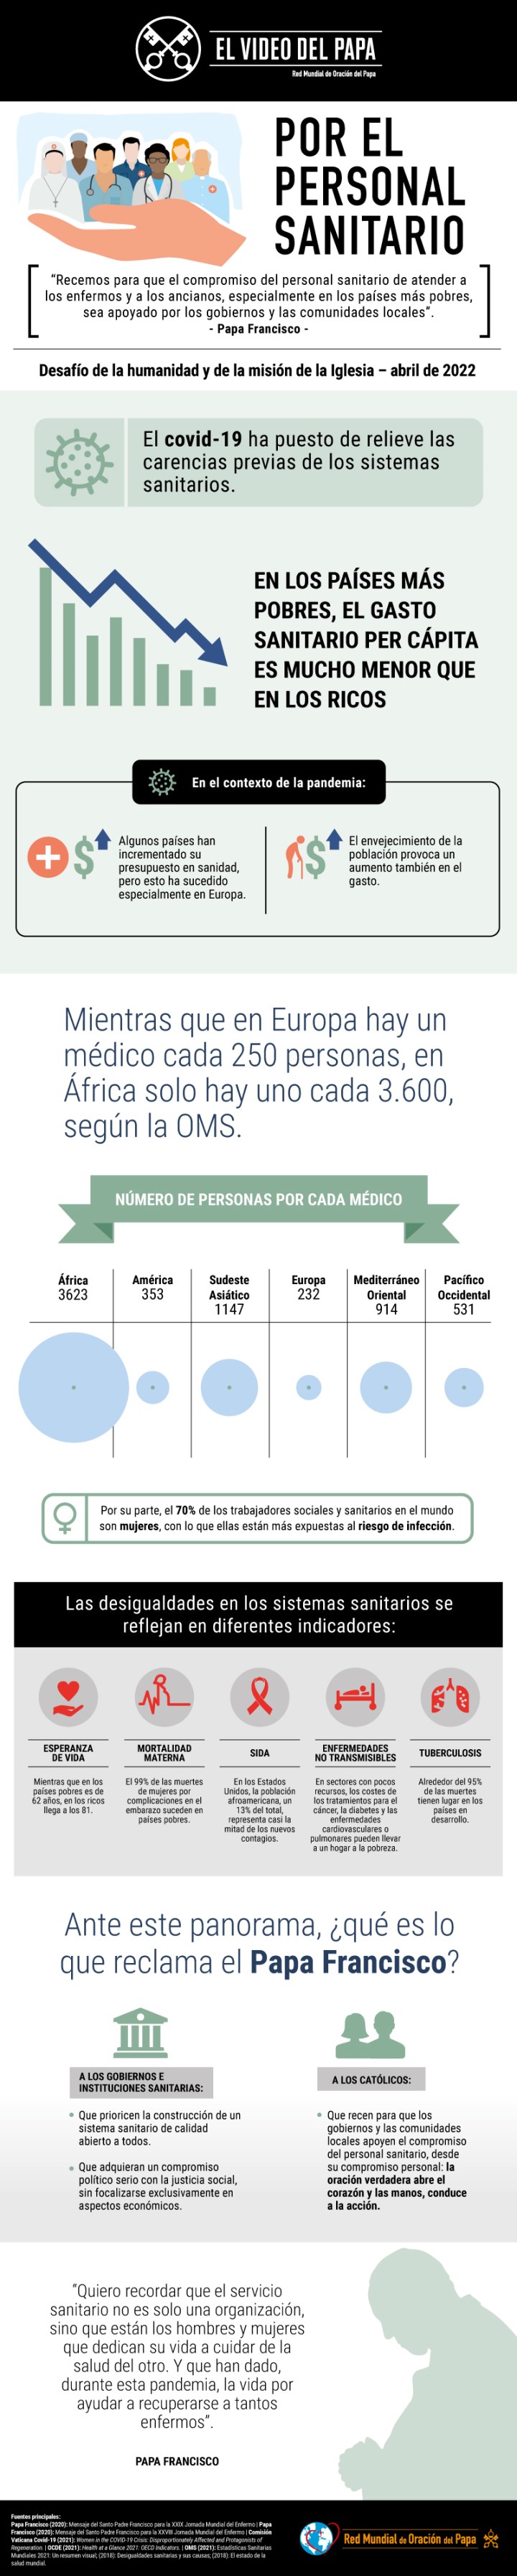 Infographic-TPV-4-2022-ES-Por-el-personal-sanitario.jpg